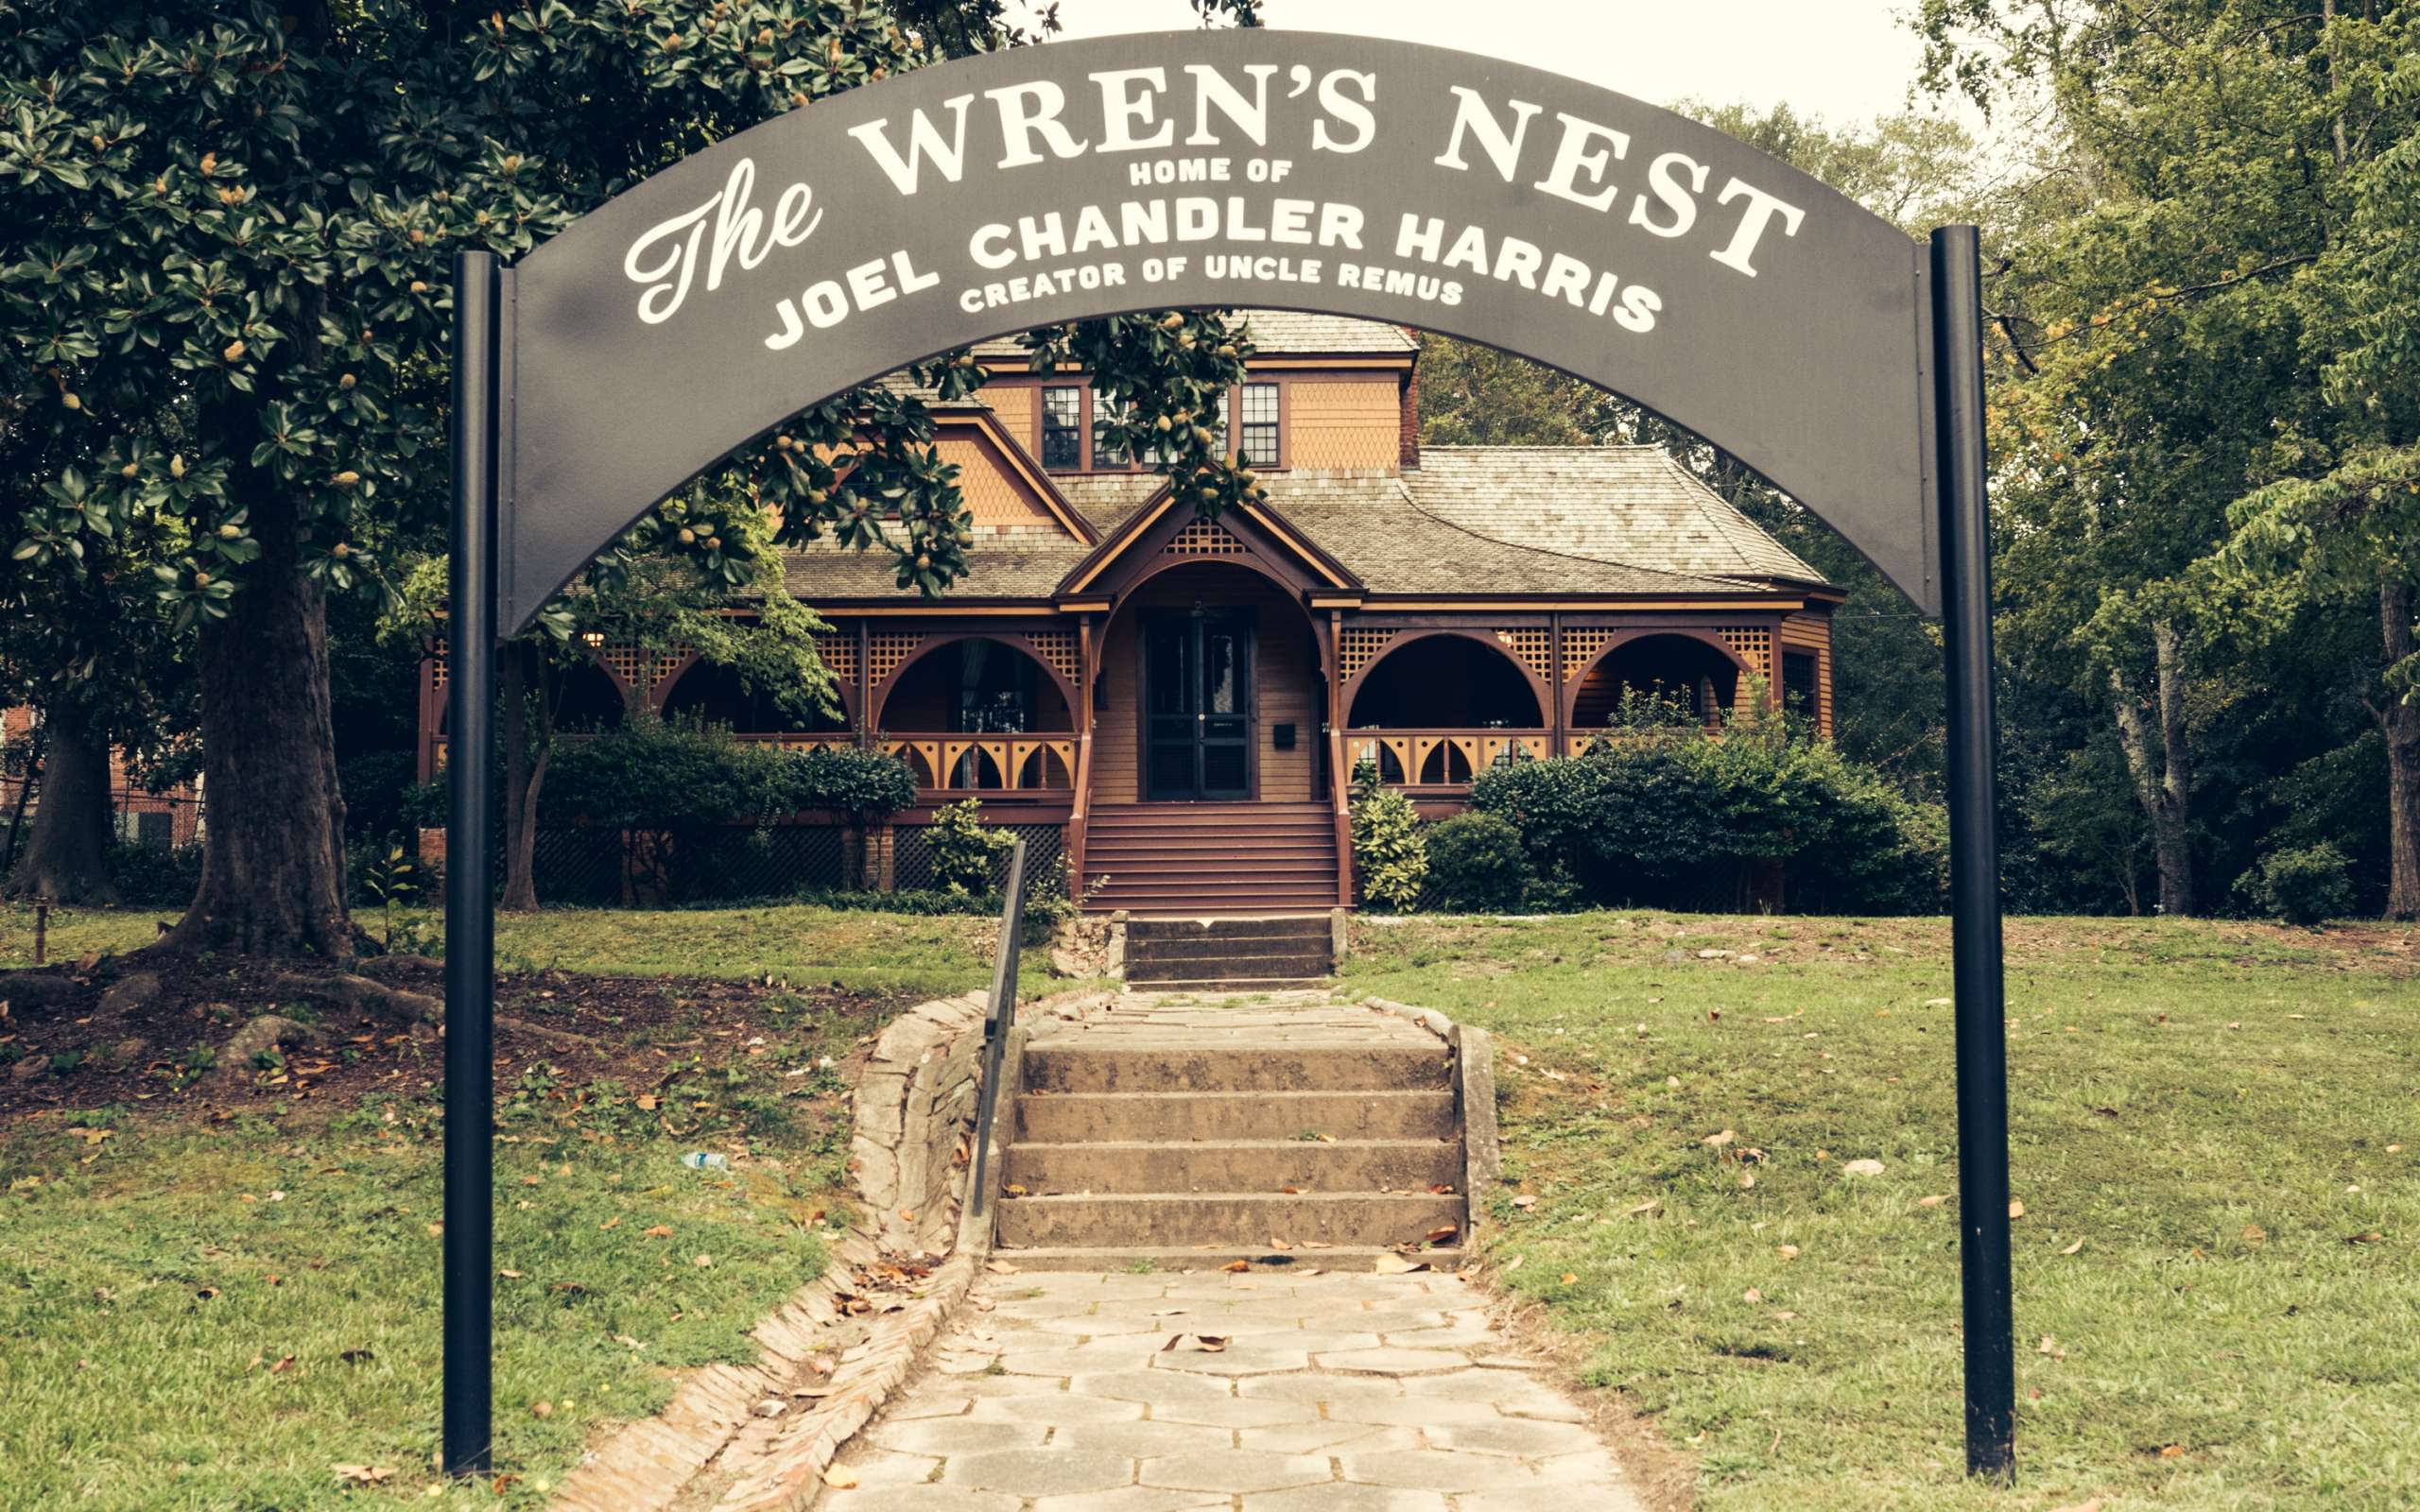 The Wren's nest home.